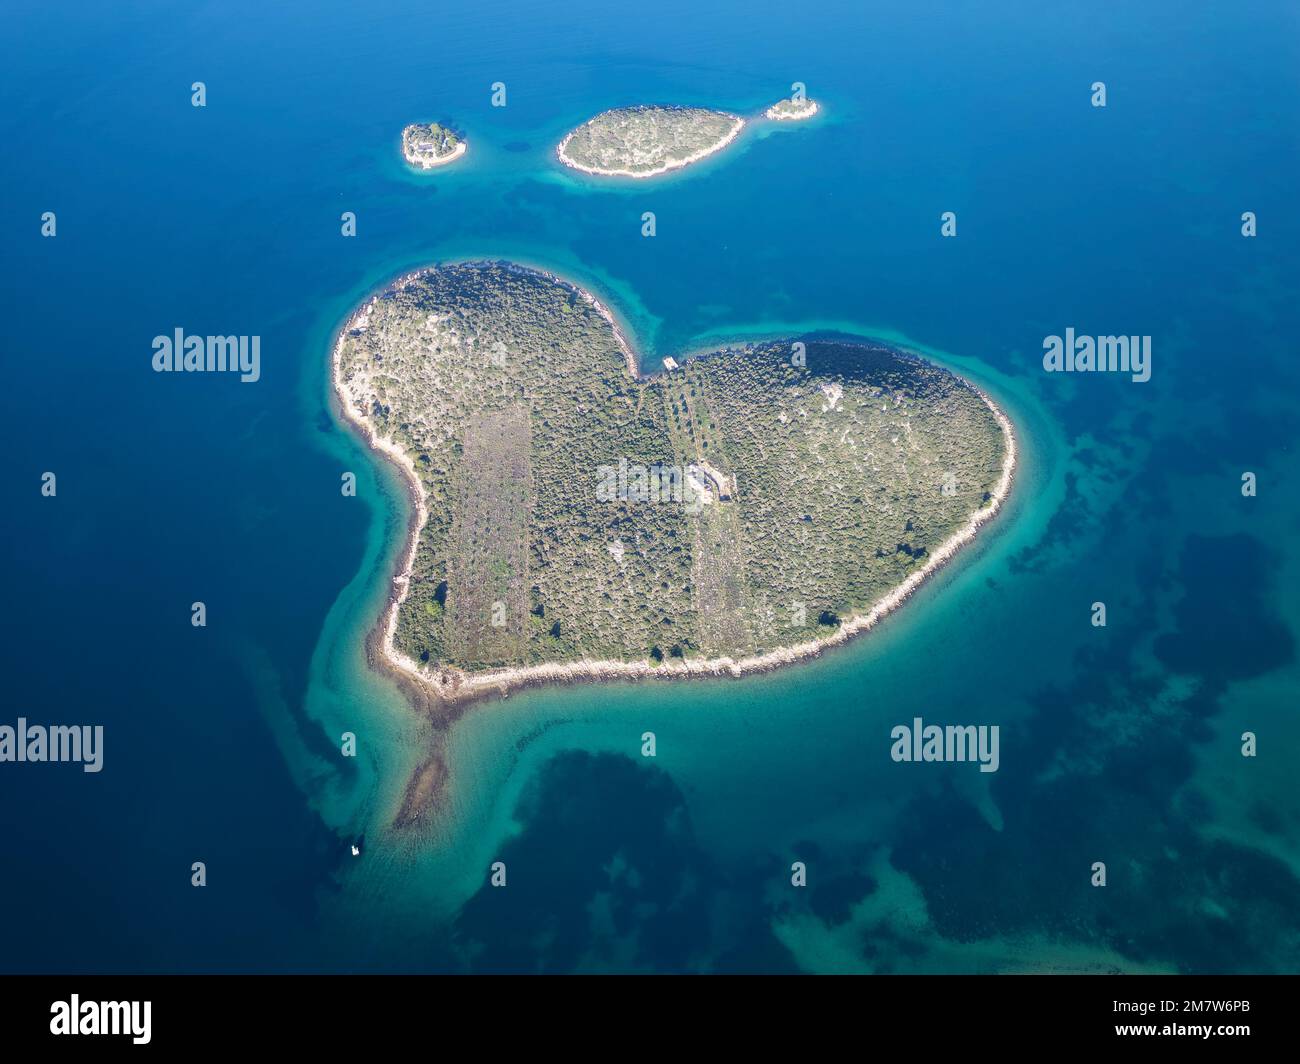 Luftaufnahme von Galesnjak, der Insel der Liebe in Kroatien, mit wunderschönem blauem türkisfarbenem Meerwasser. Herzförmige Insel. Reisen und Urlaub. Stockfoto